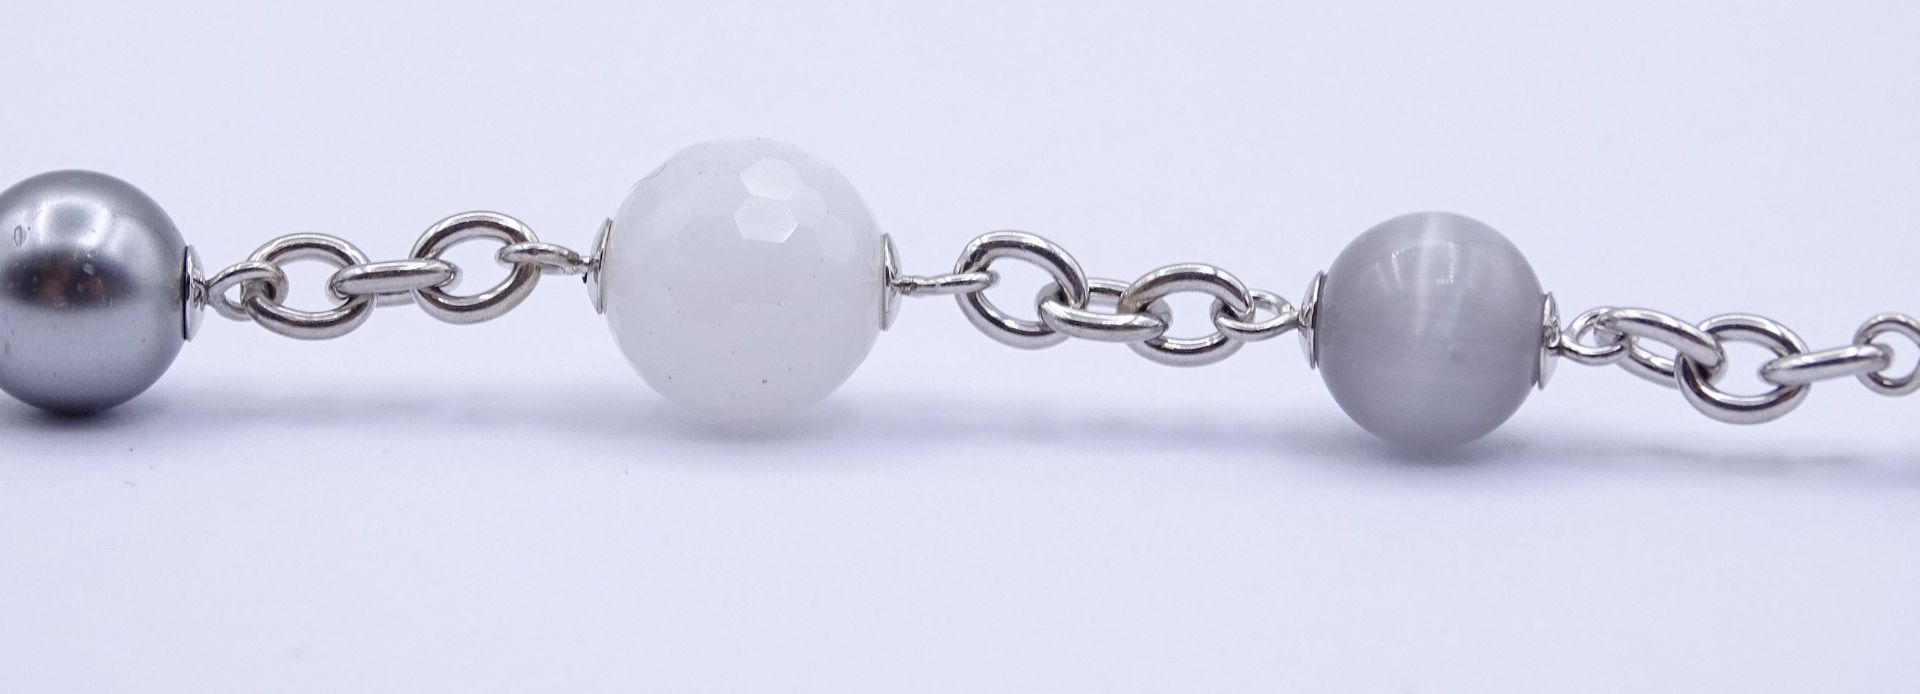 TI Sento Armband mit Perlen,Sterling Silber 0.925, L. 21 - 24cm, 26g. - Bild 5 aus 5